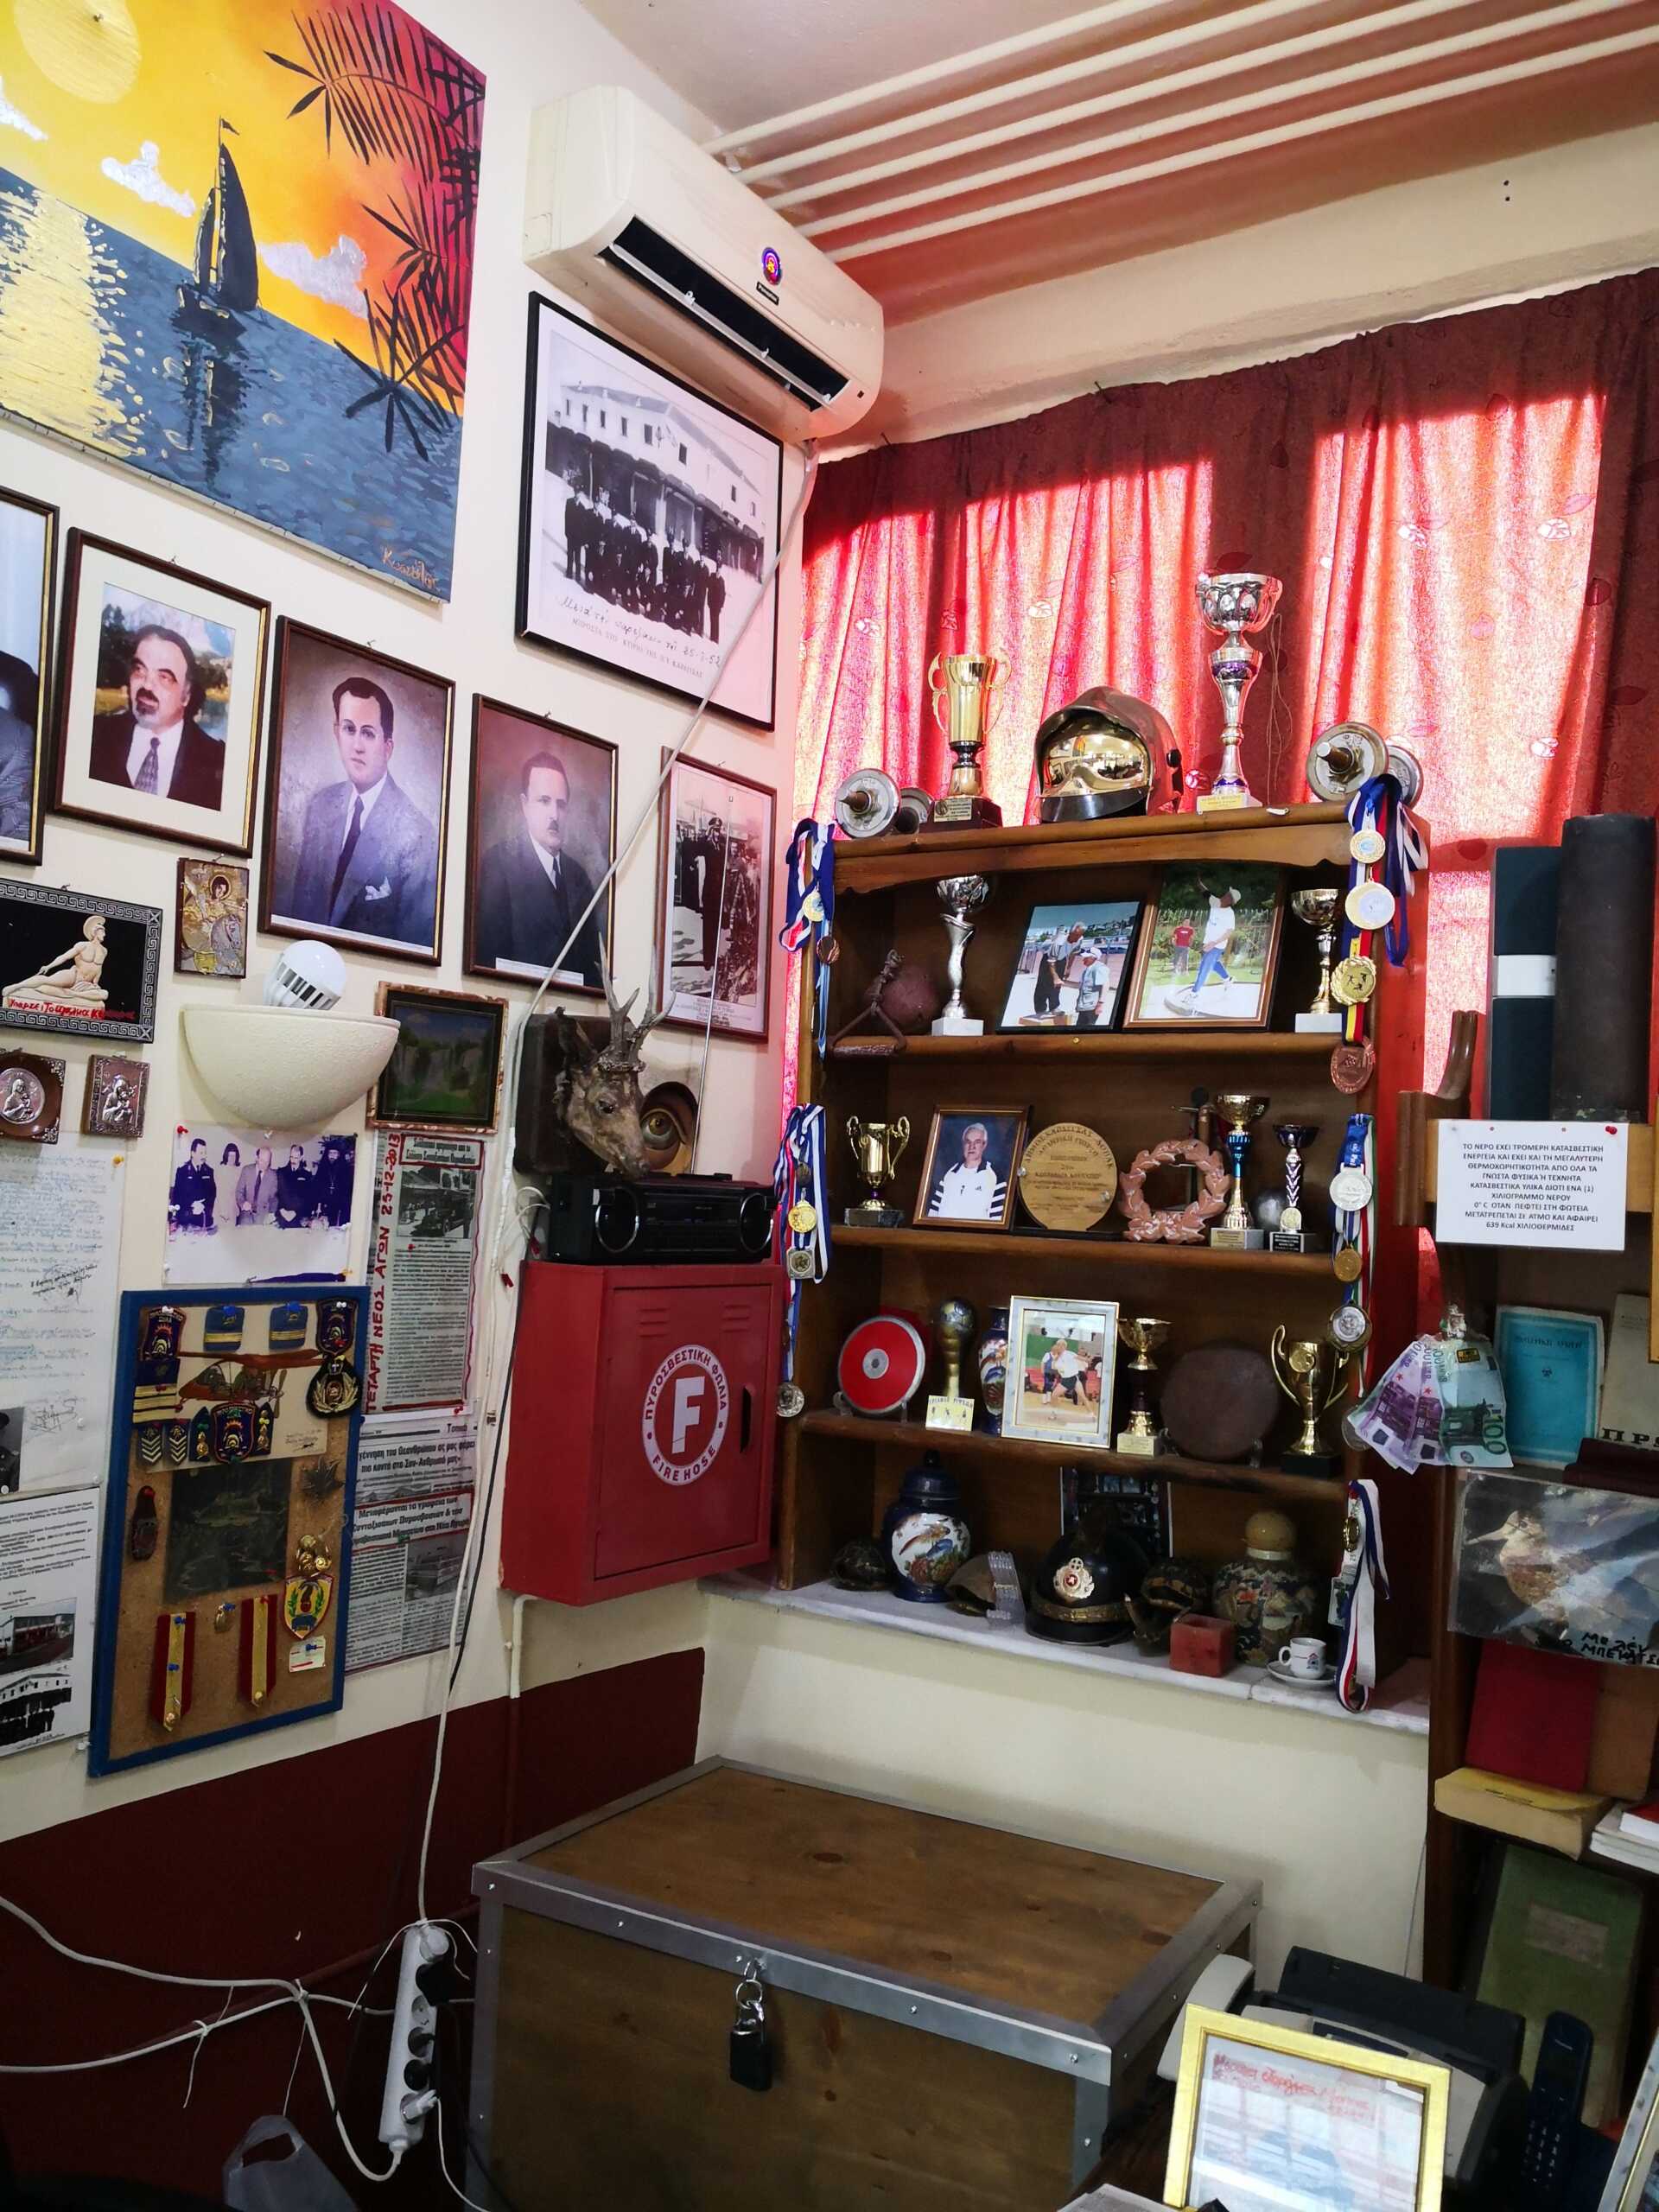 Πυροσβεστικό μουσείο στην Καρδίτσα: Εικόνες που ξετυλίγουν την ιστορία της πυροσβεστικής στο χρόνο